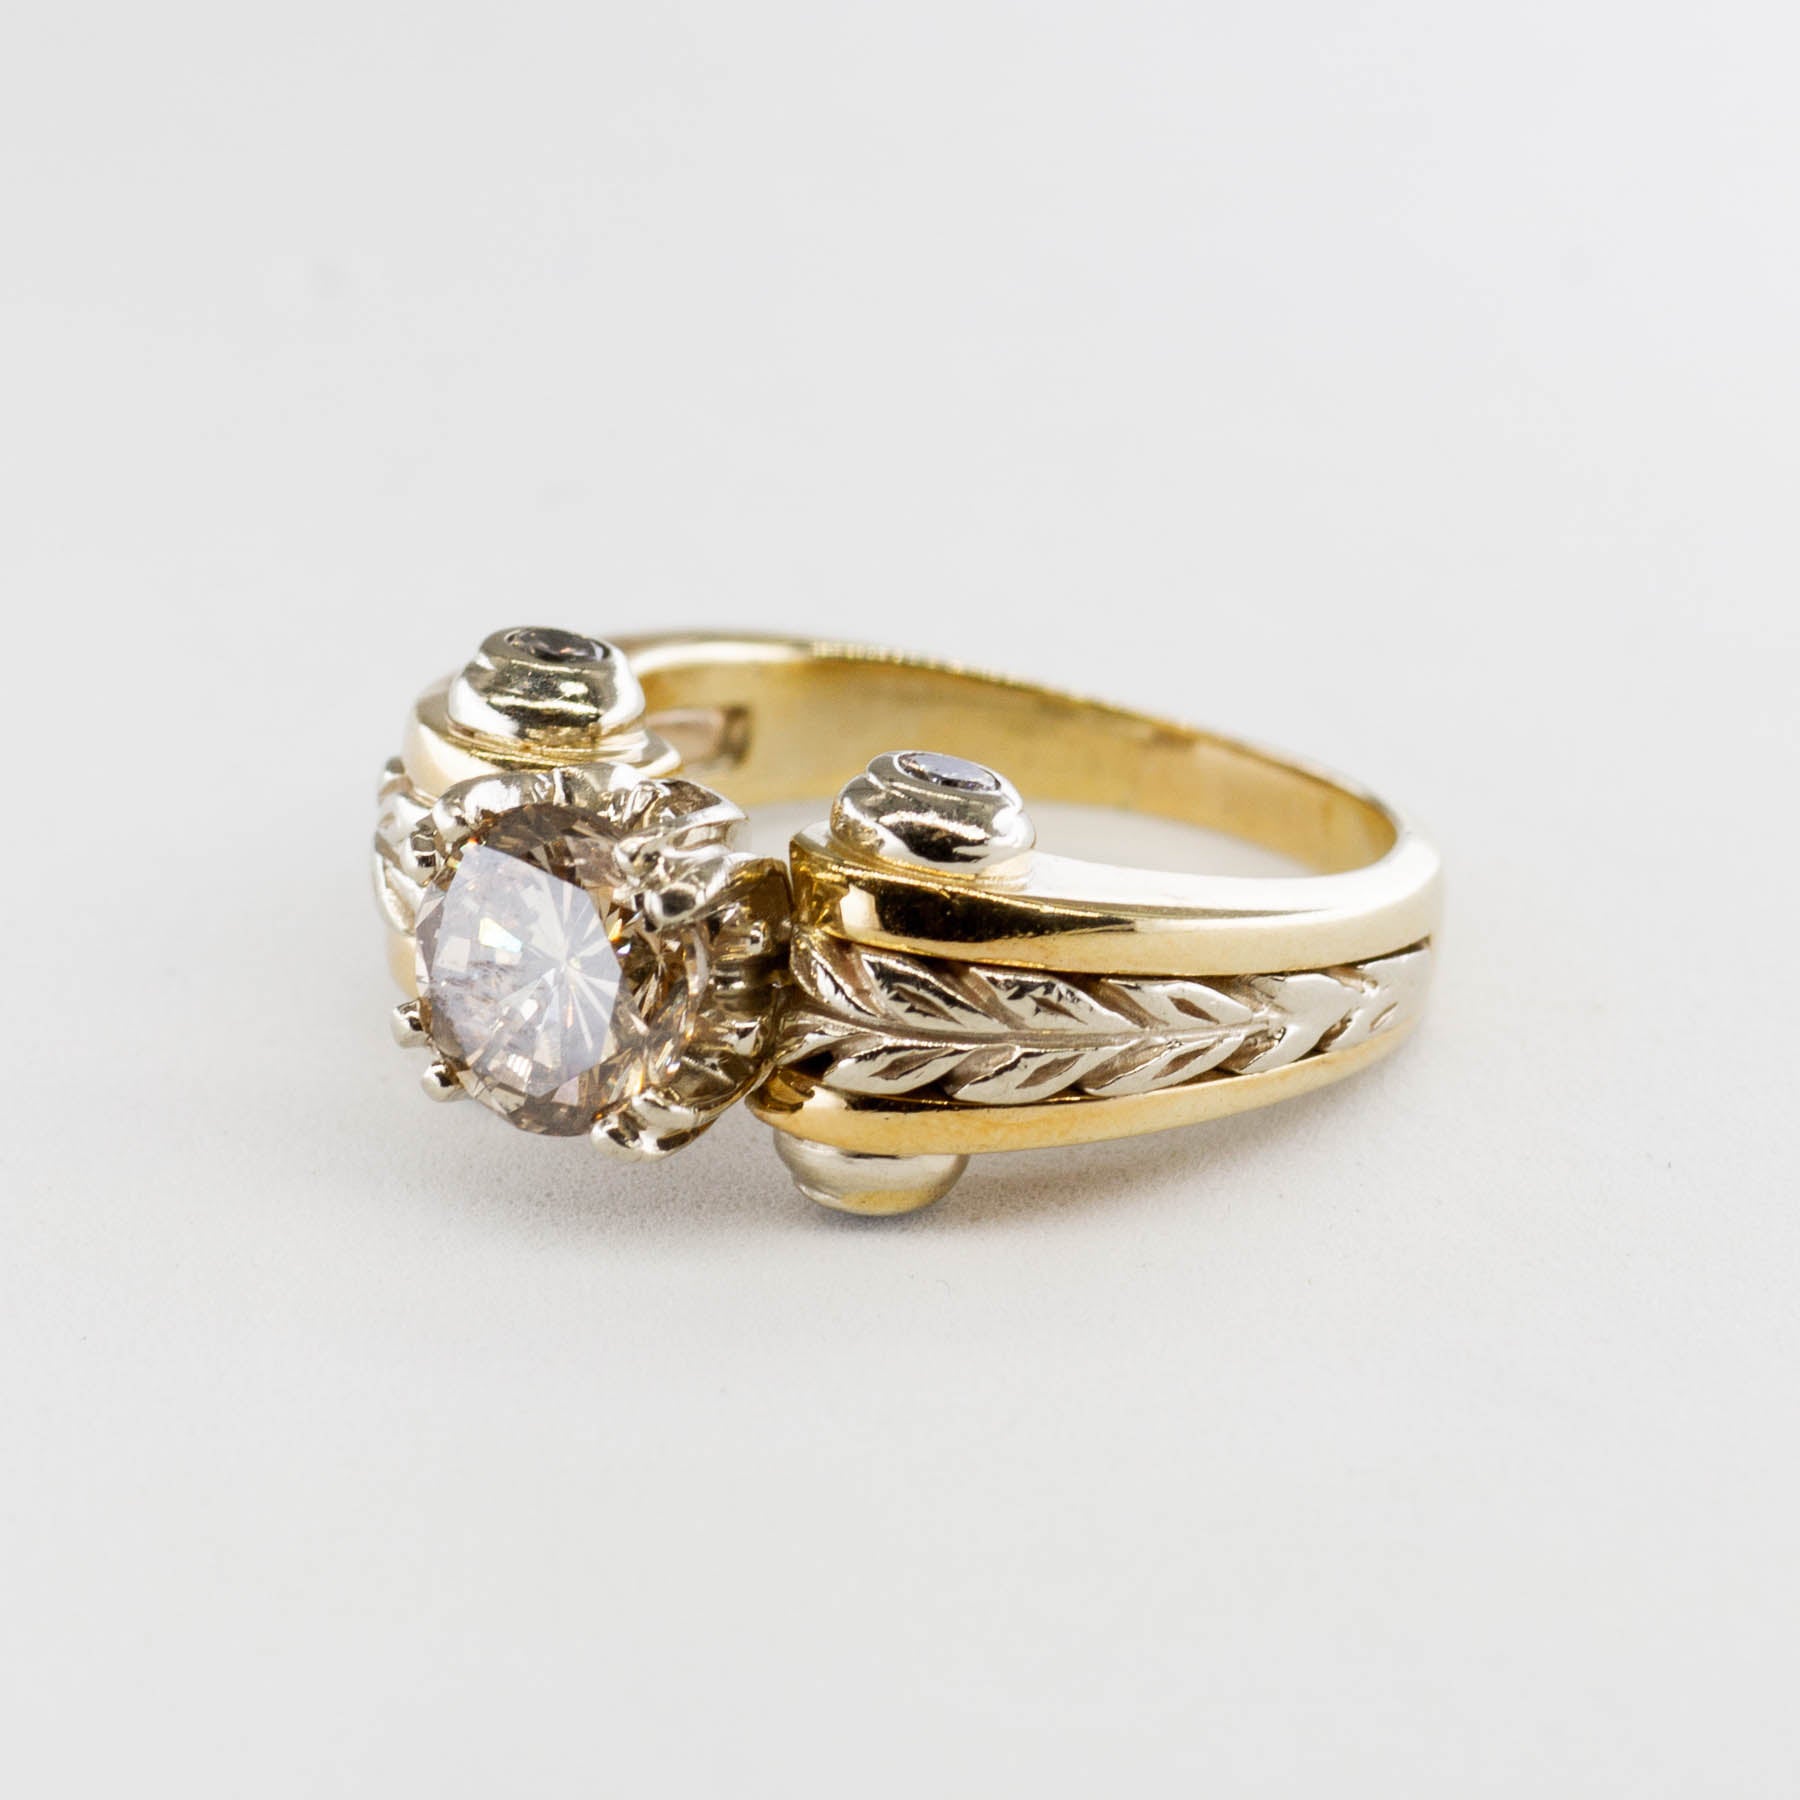 Unique Champagne Diamond Engagement Ring | 1.64 ctw, SZ 6.75 |